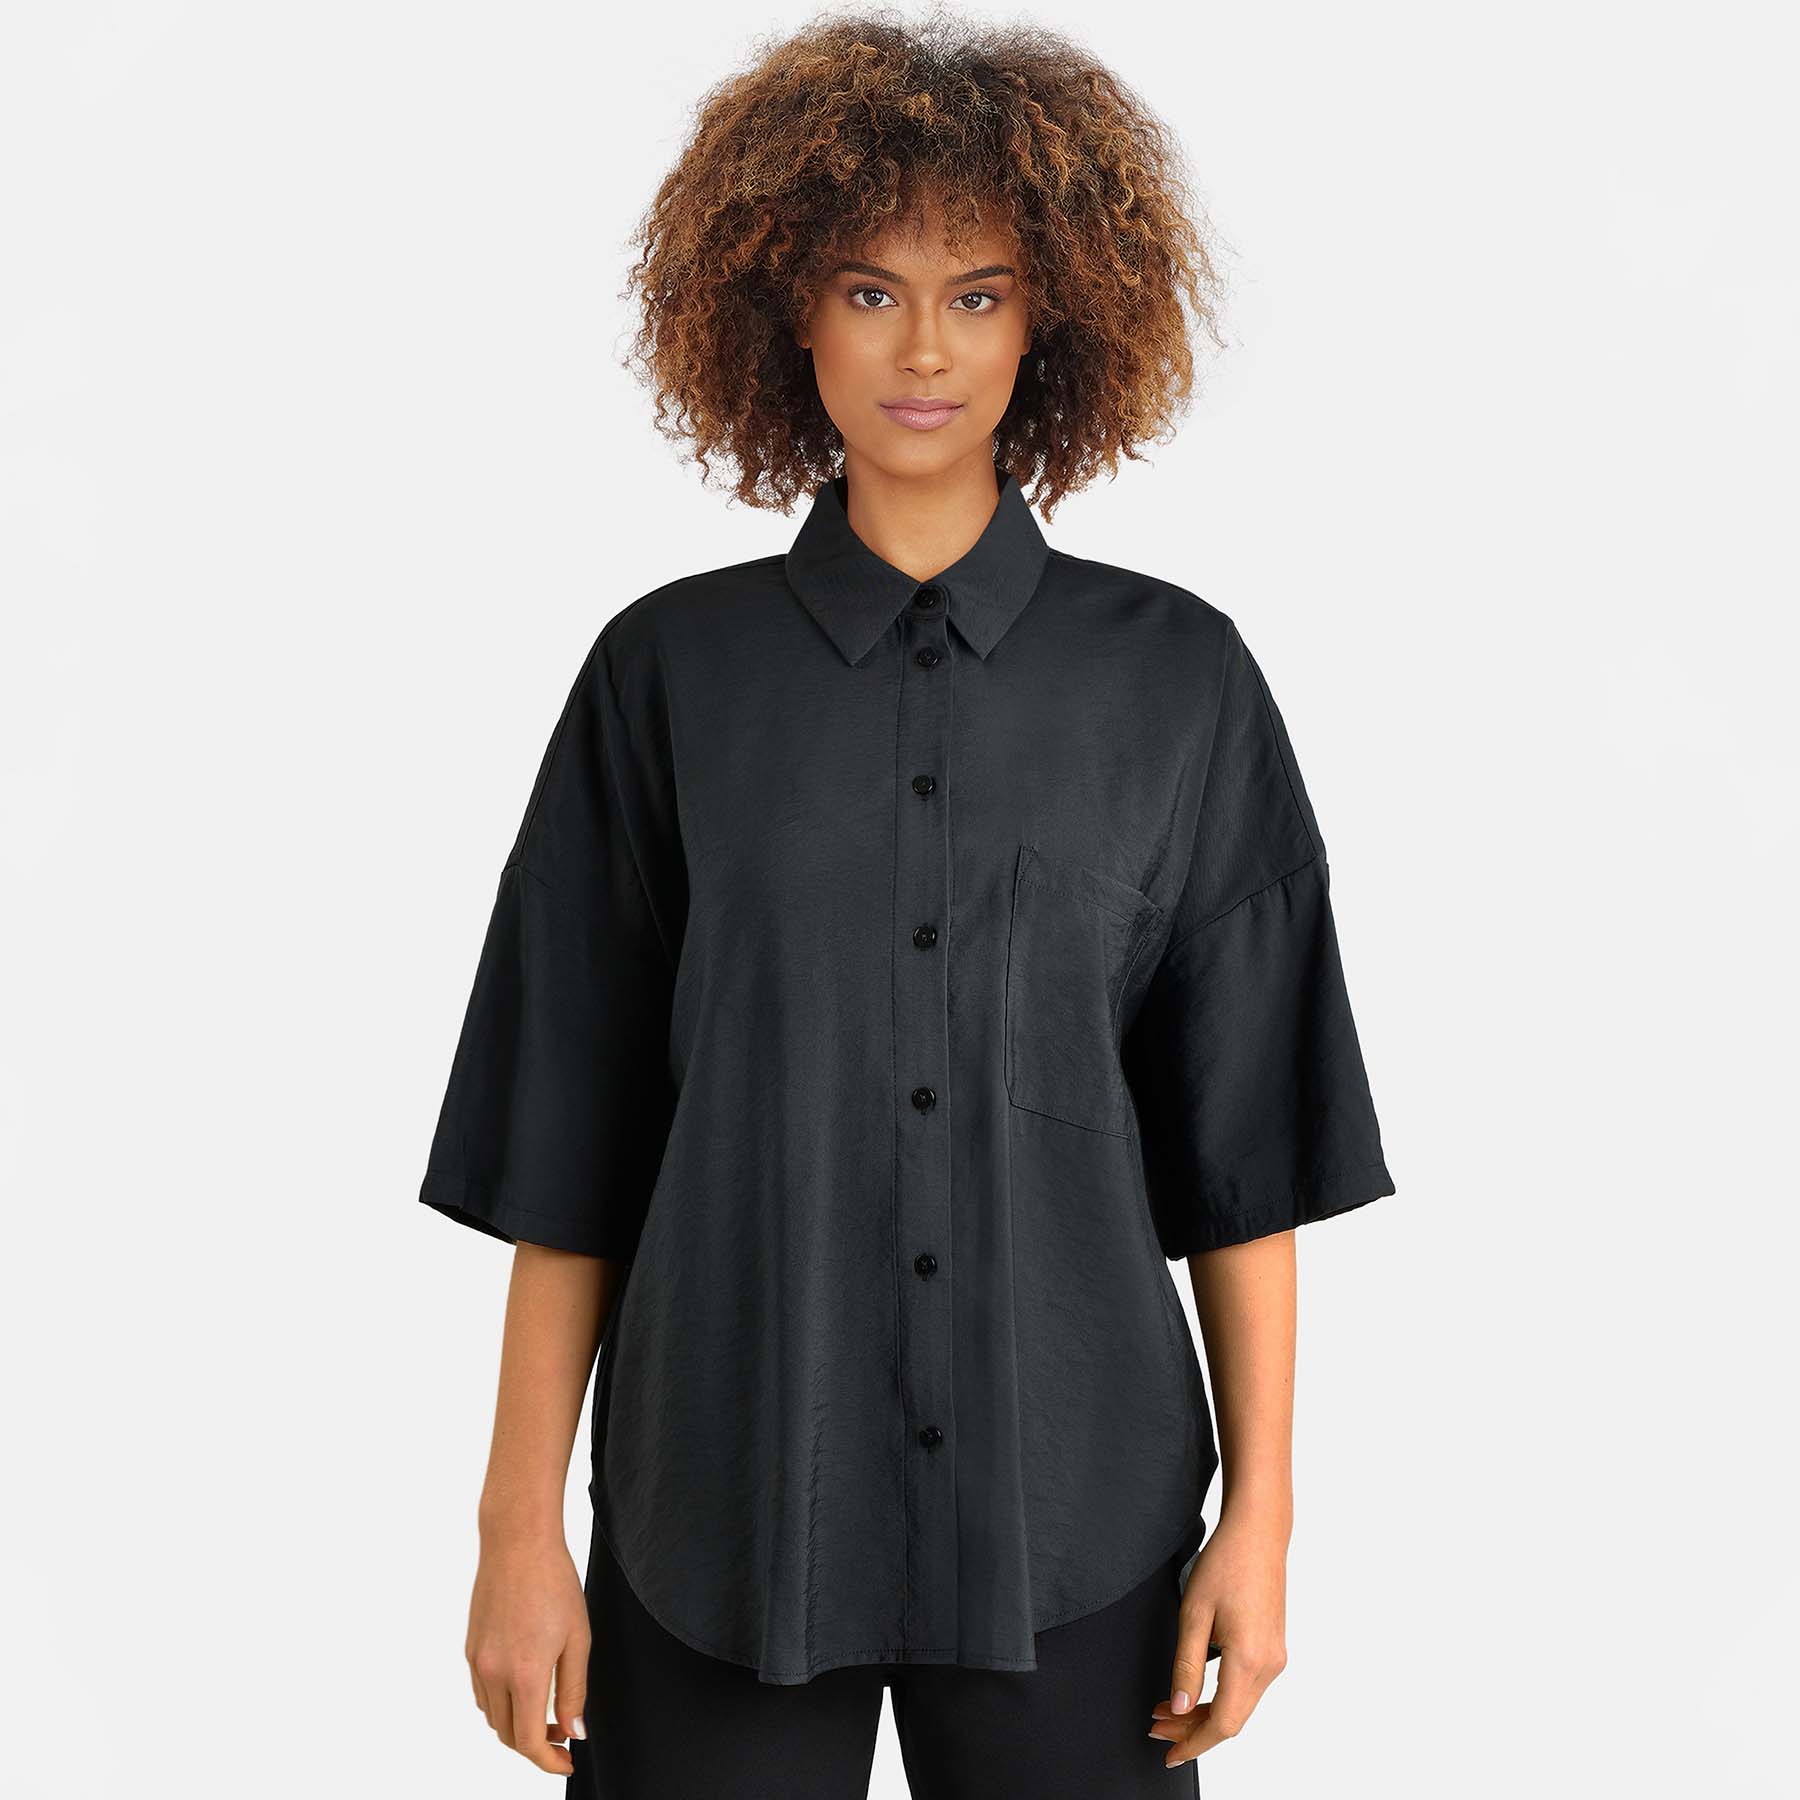 SisterS Point - Ella-n.sh - Bluser og skjorter til kvinder - Sort - M/L